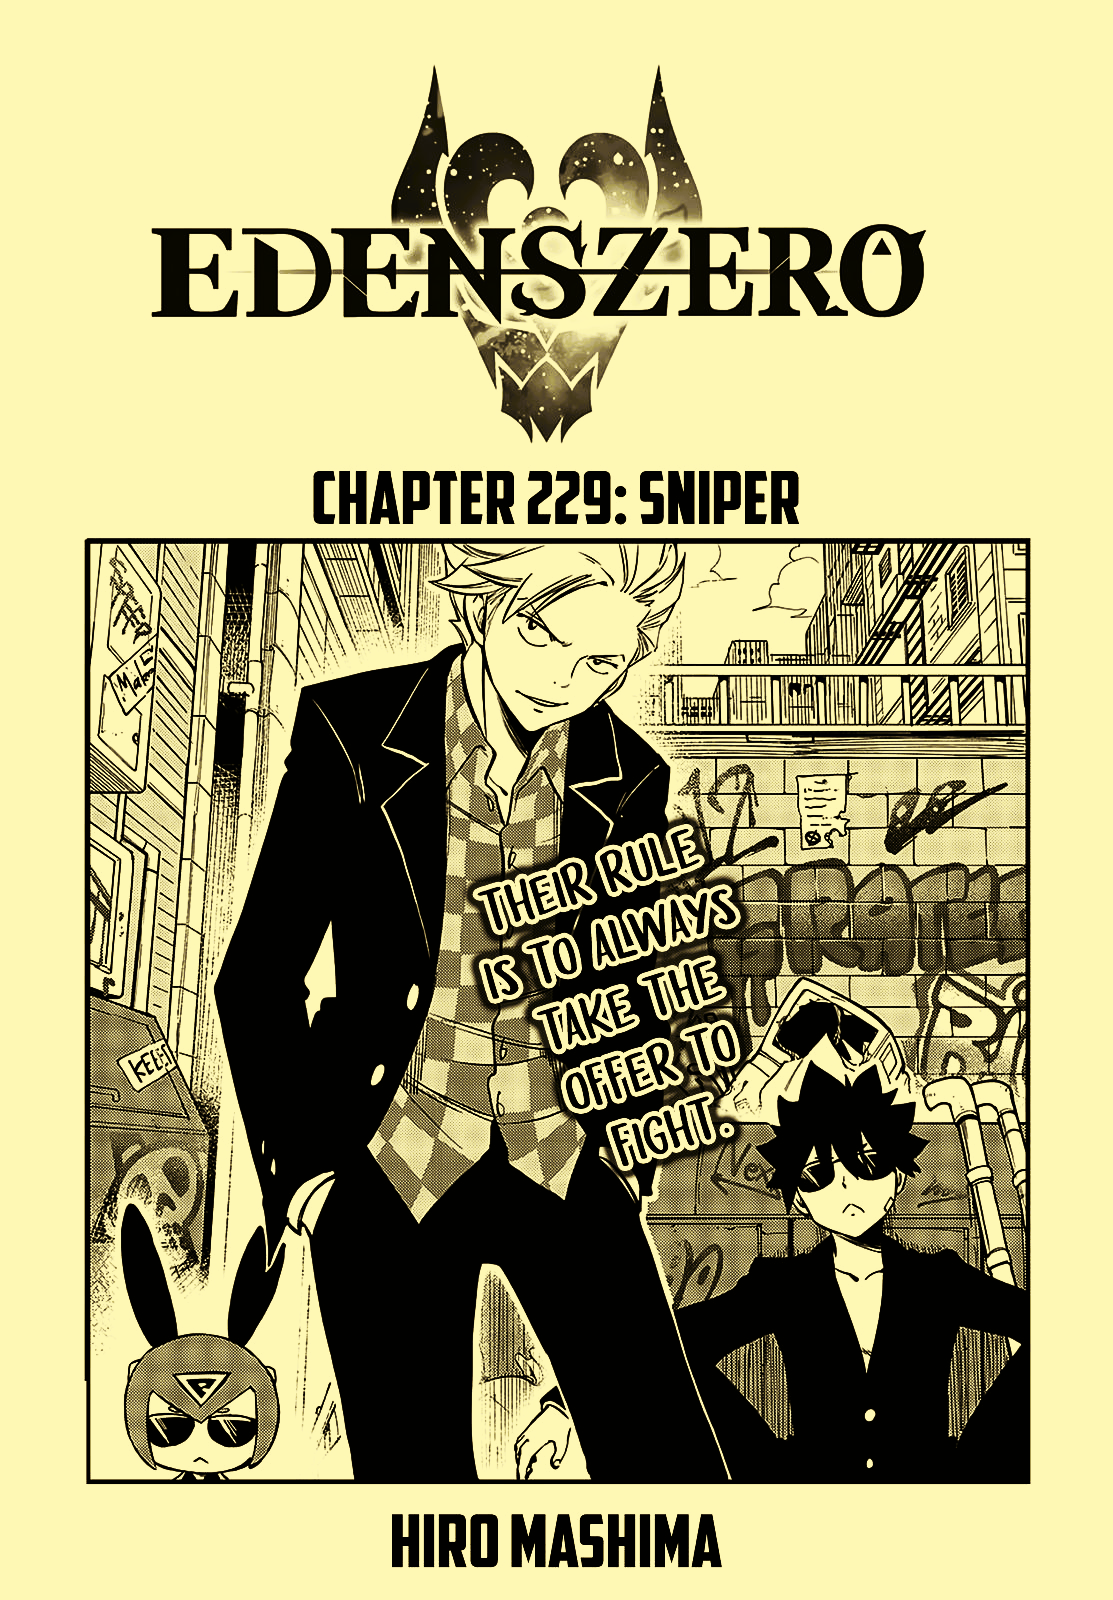 Hermit Helps Her Husbando!! Edens Zero Chapter 229 BREAKDOWN